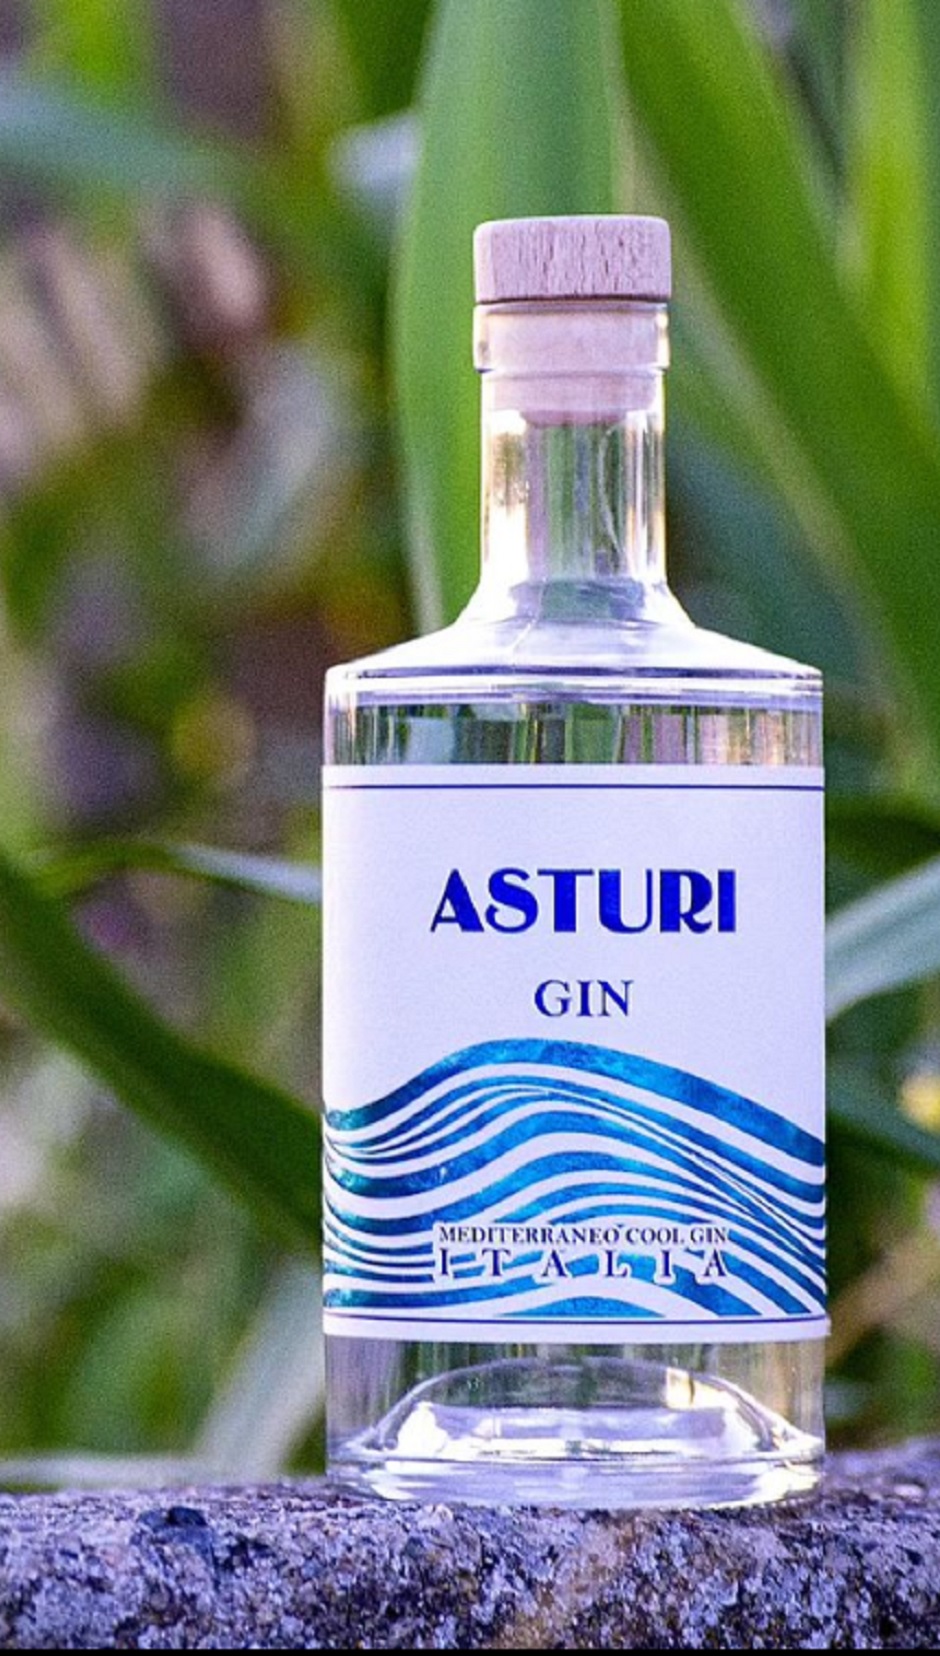 ASTURI - Asturi Gin si ispira alle meraviglie del territorio calabrese, le colline, le coste e le azzurre onde del mediterraneo che lo circondano.